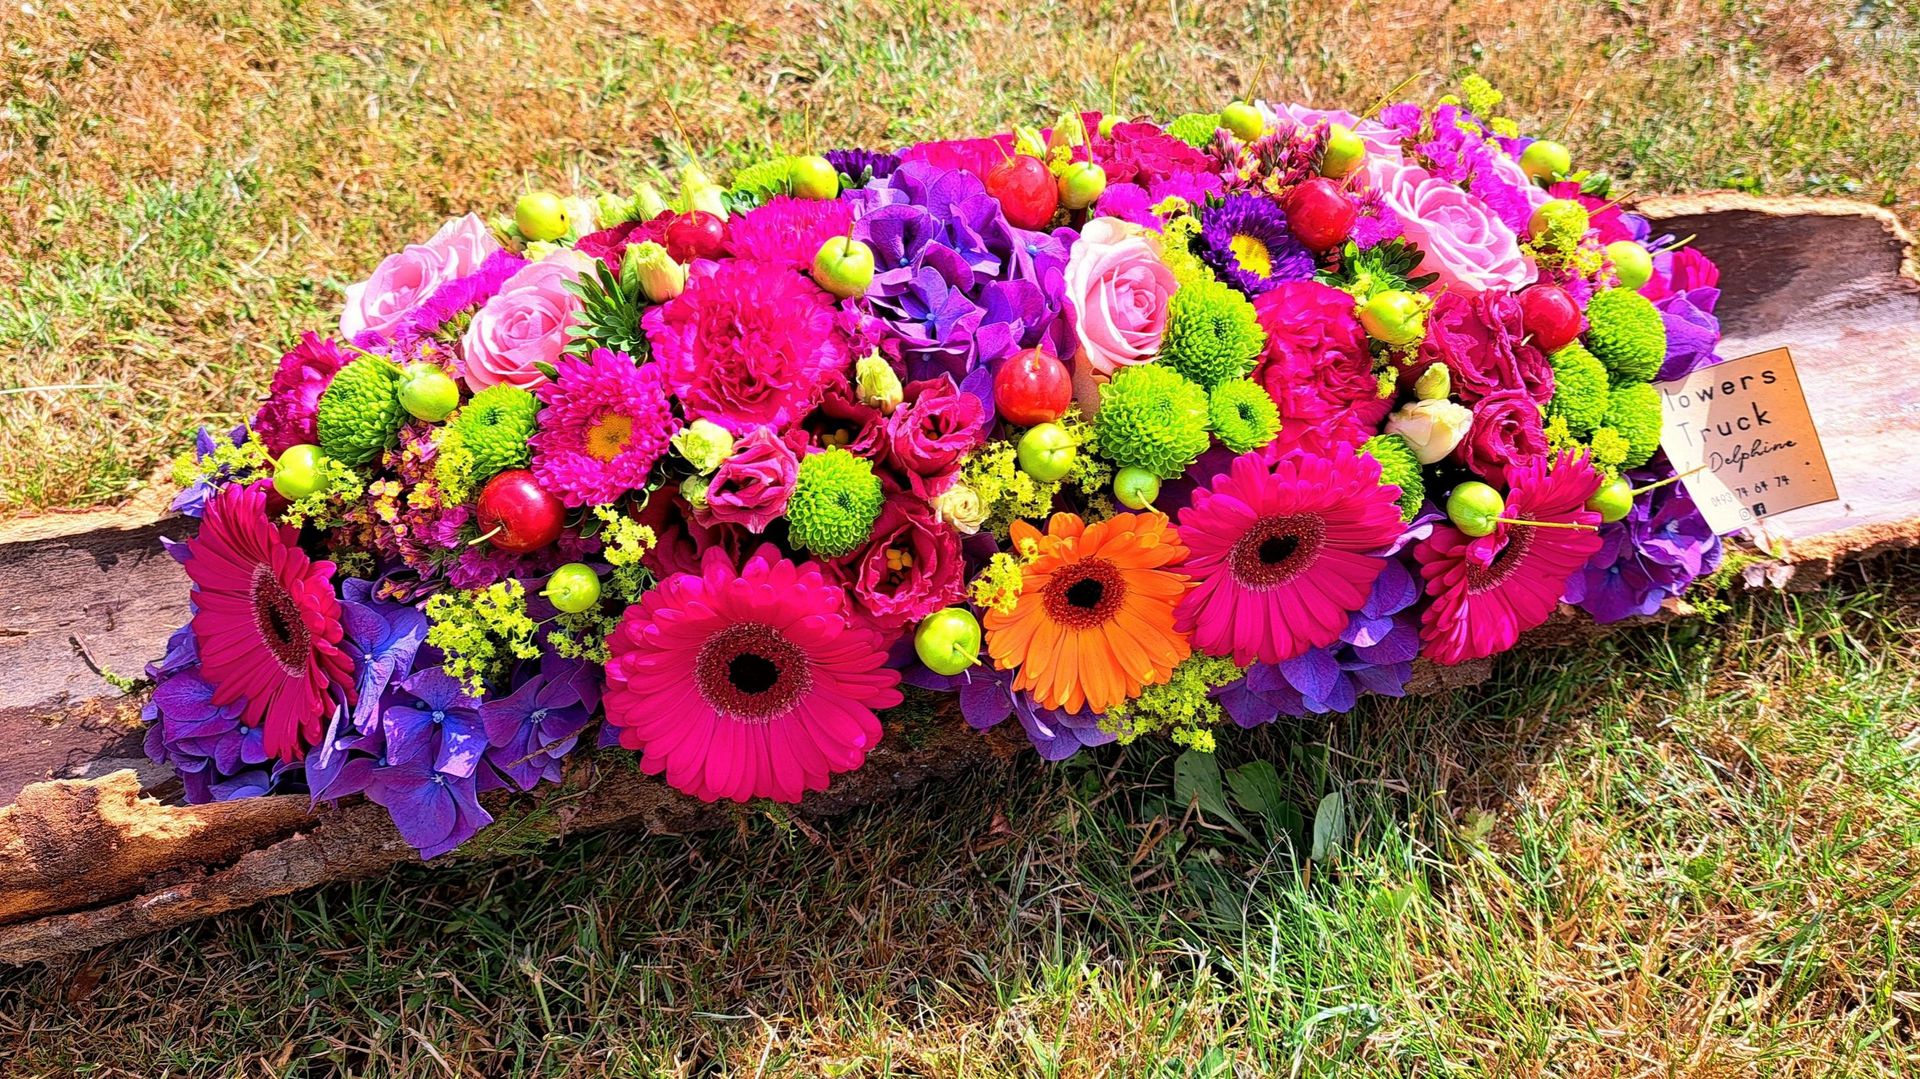 "Flowers Truck By Delphine", de jolis bouquets colorés et des ateliers pour apprendre l’art floral.